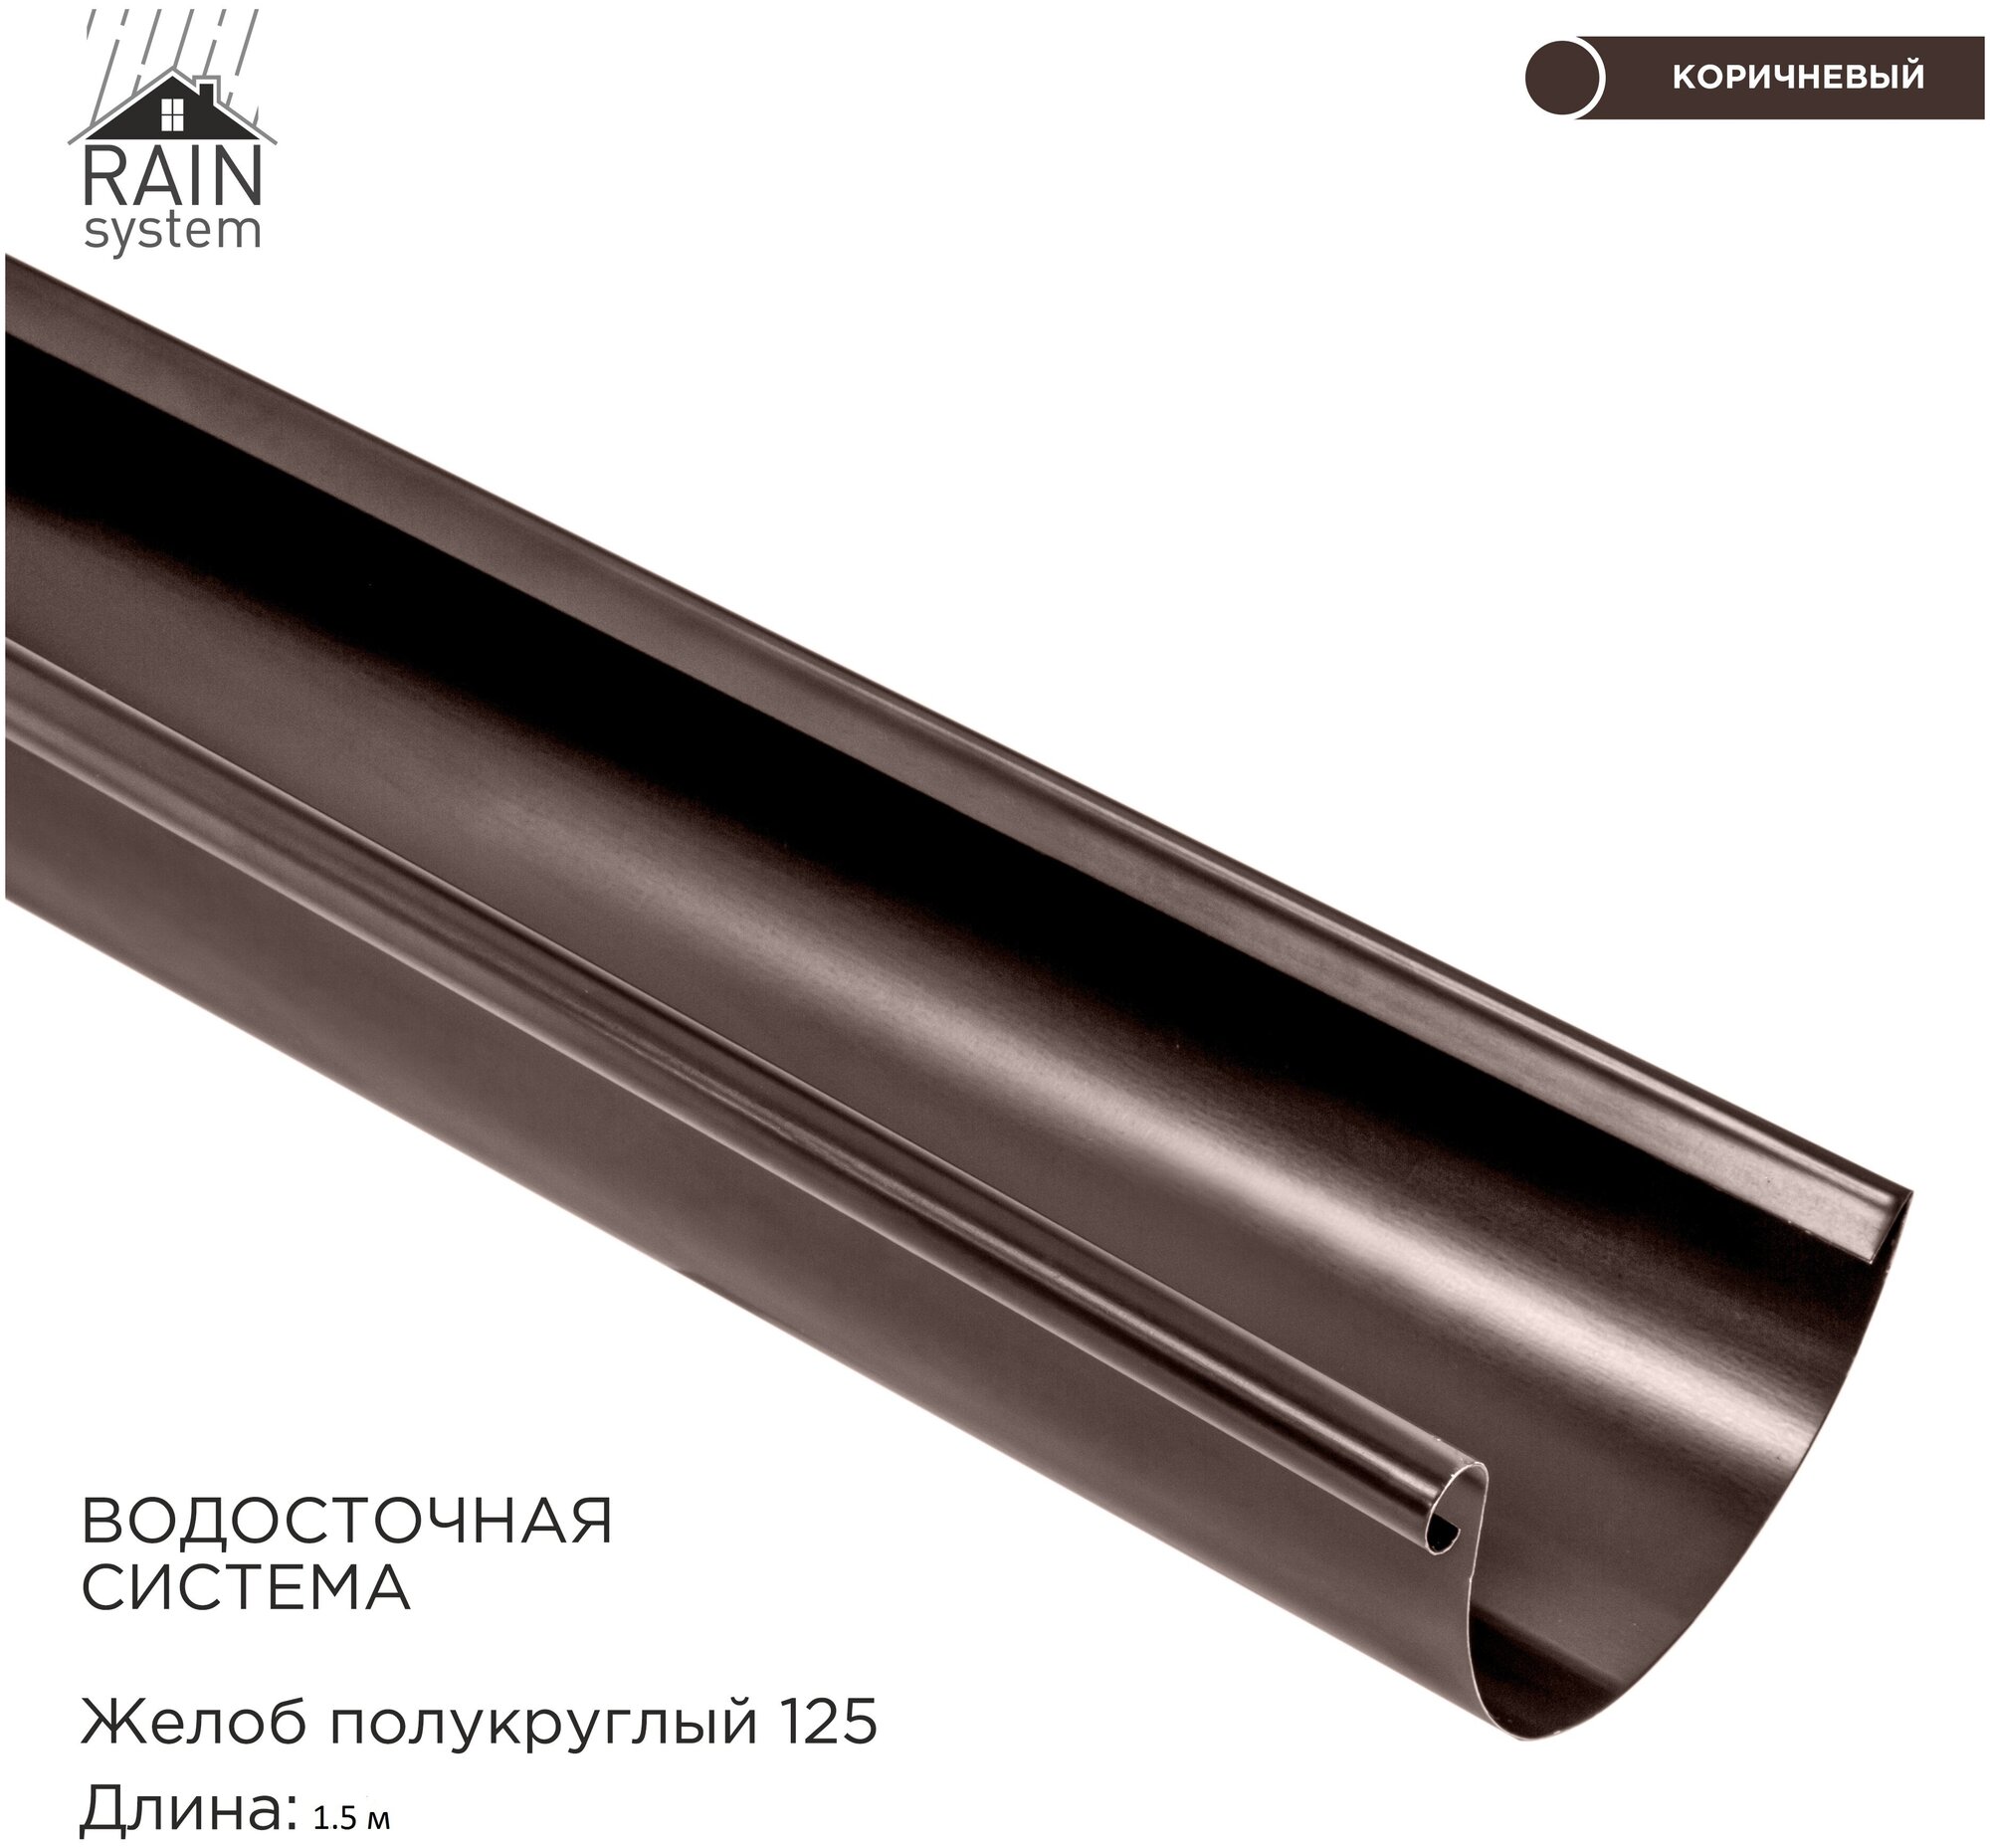 Желоб металлический водосточной системы RAIN SYSTEM цвет 8017. длина 1.5м 1 штука